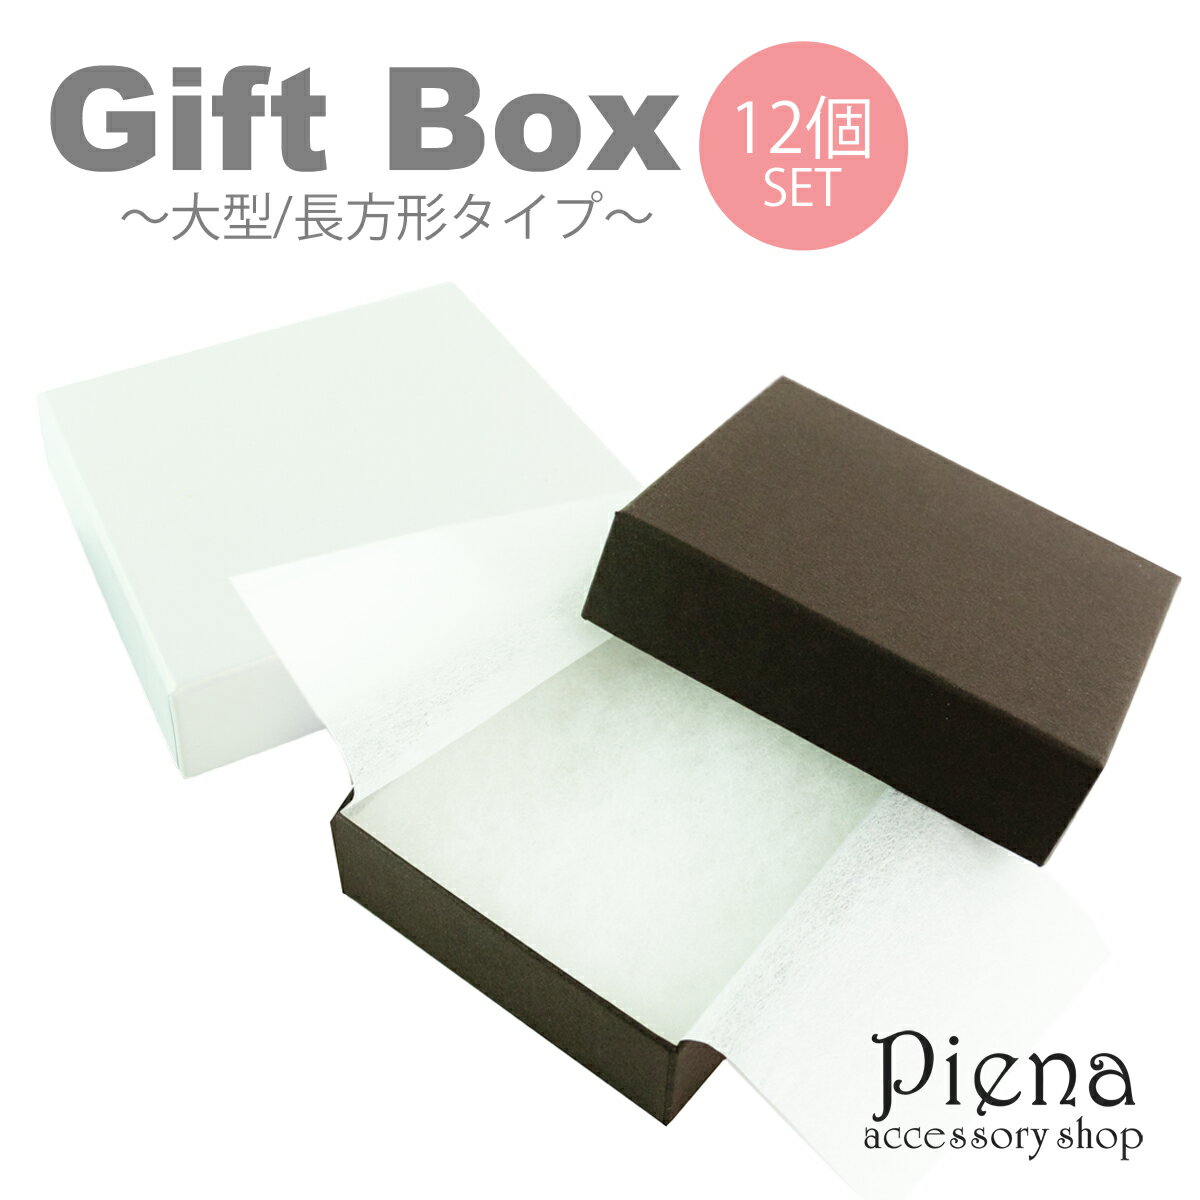 ギフトボックス プレゼント 箱 12個セット 大きめ 長方形